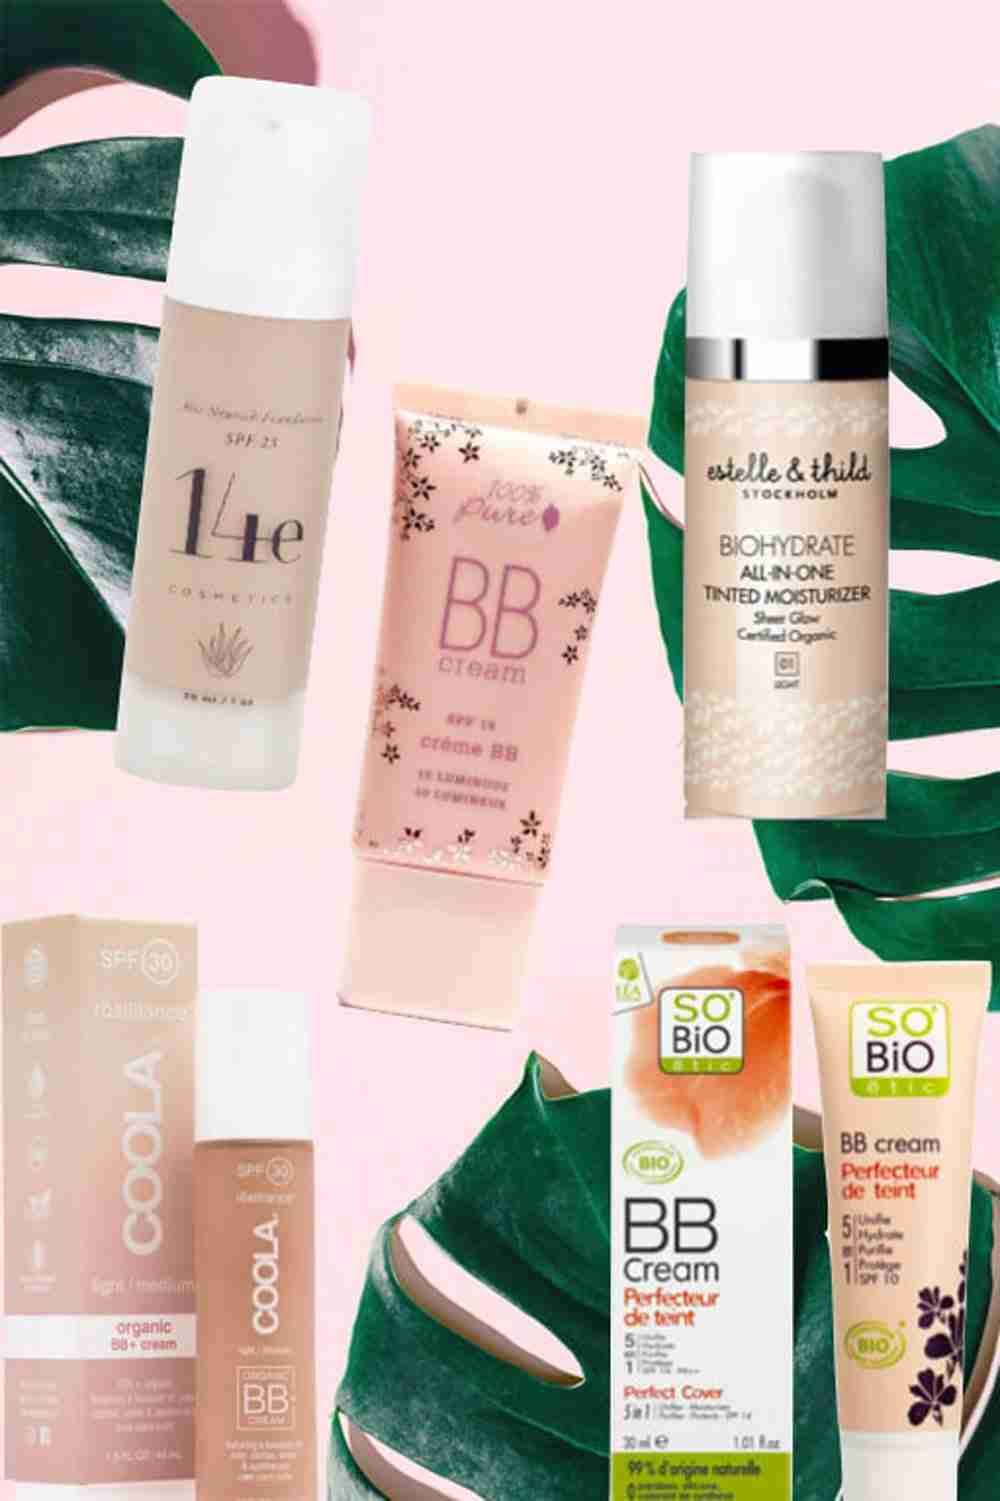 BB Cream Bio: Tante creme green da provare per una beauty routine sana e naturale